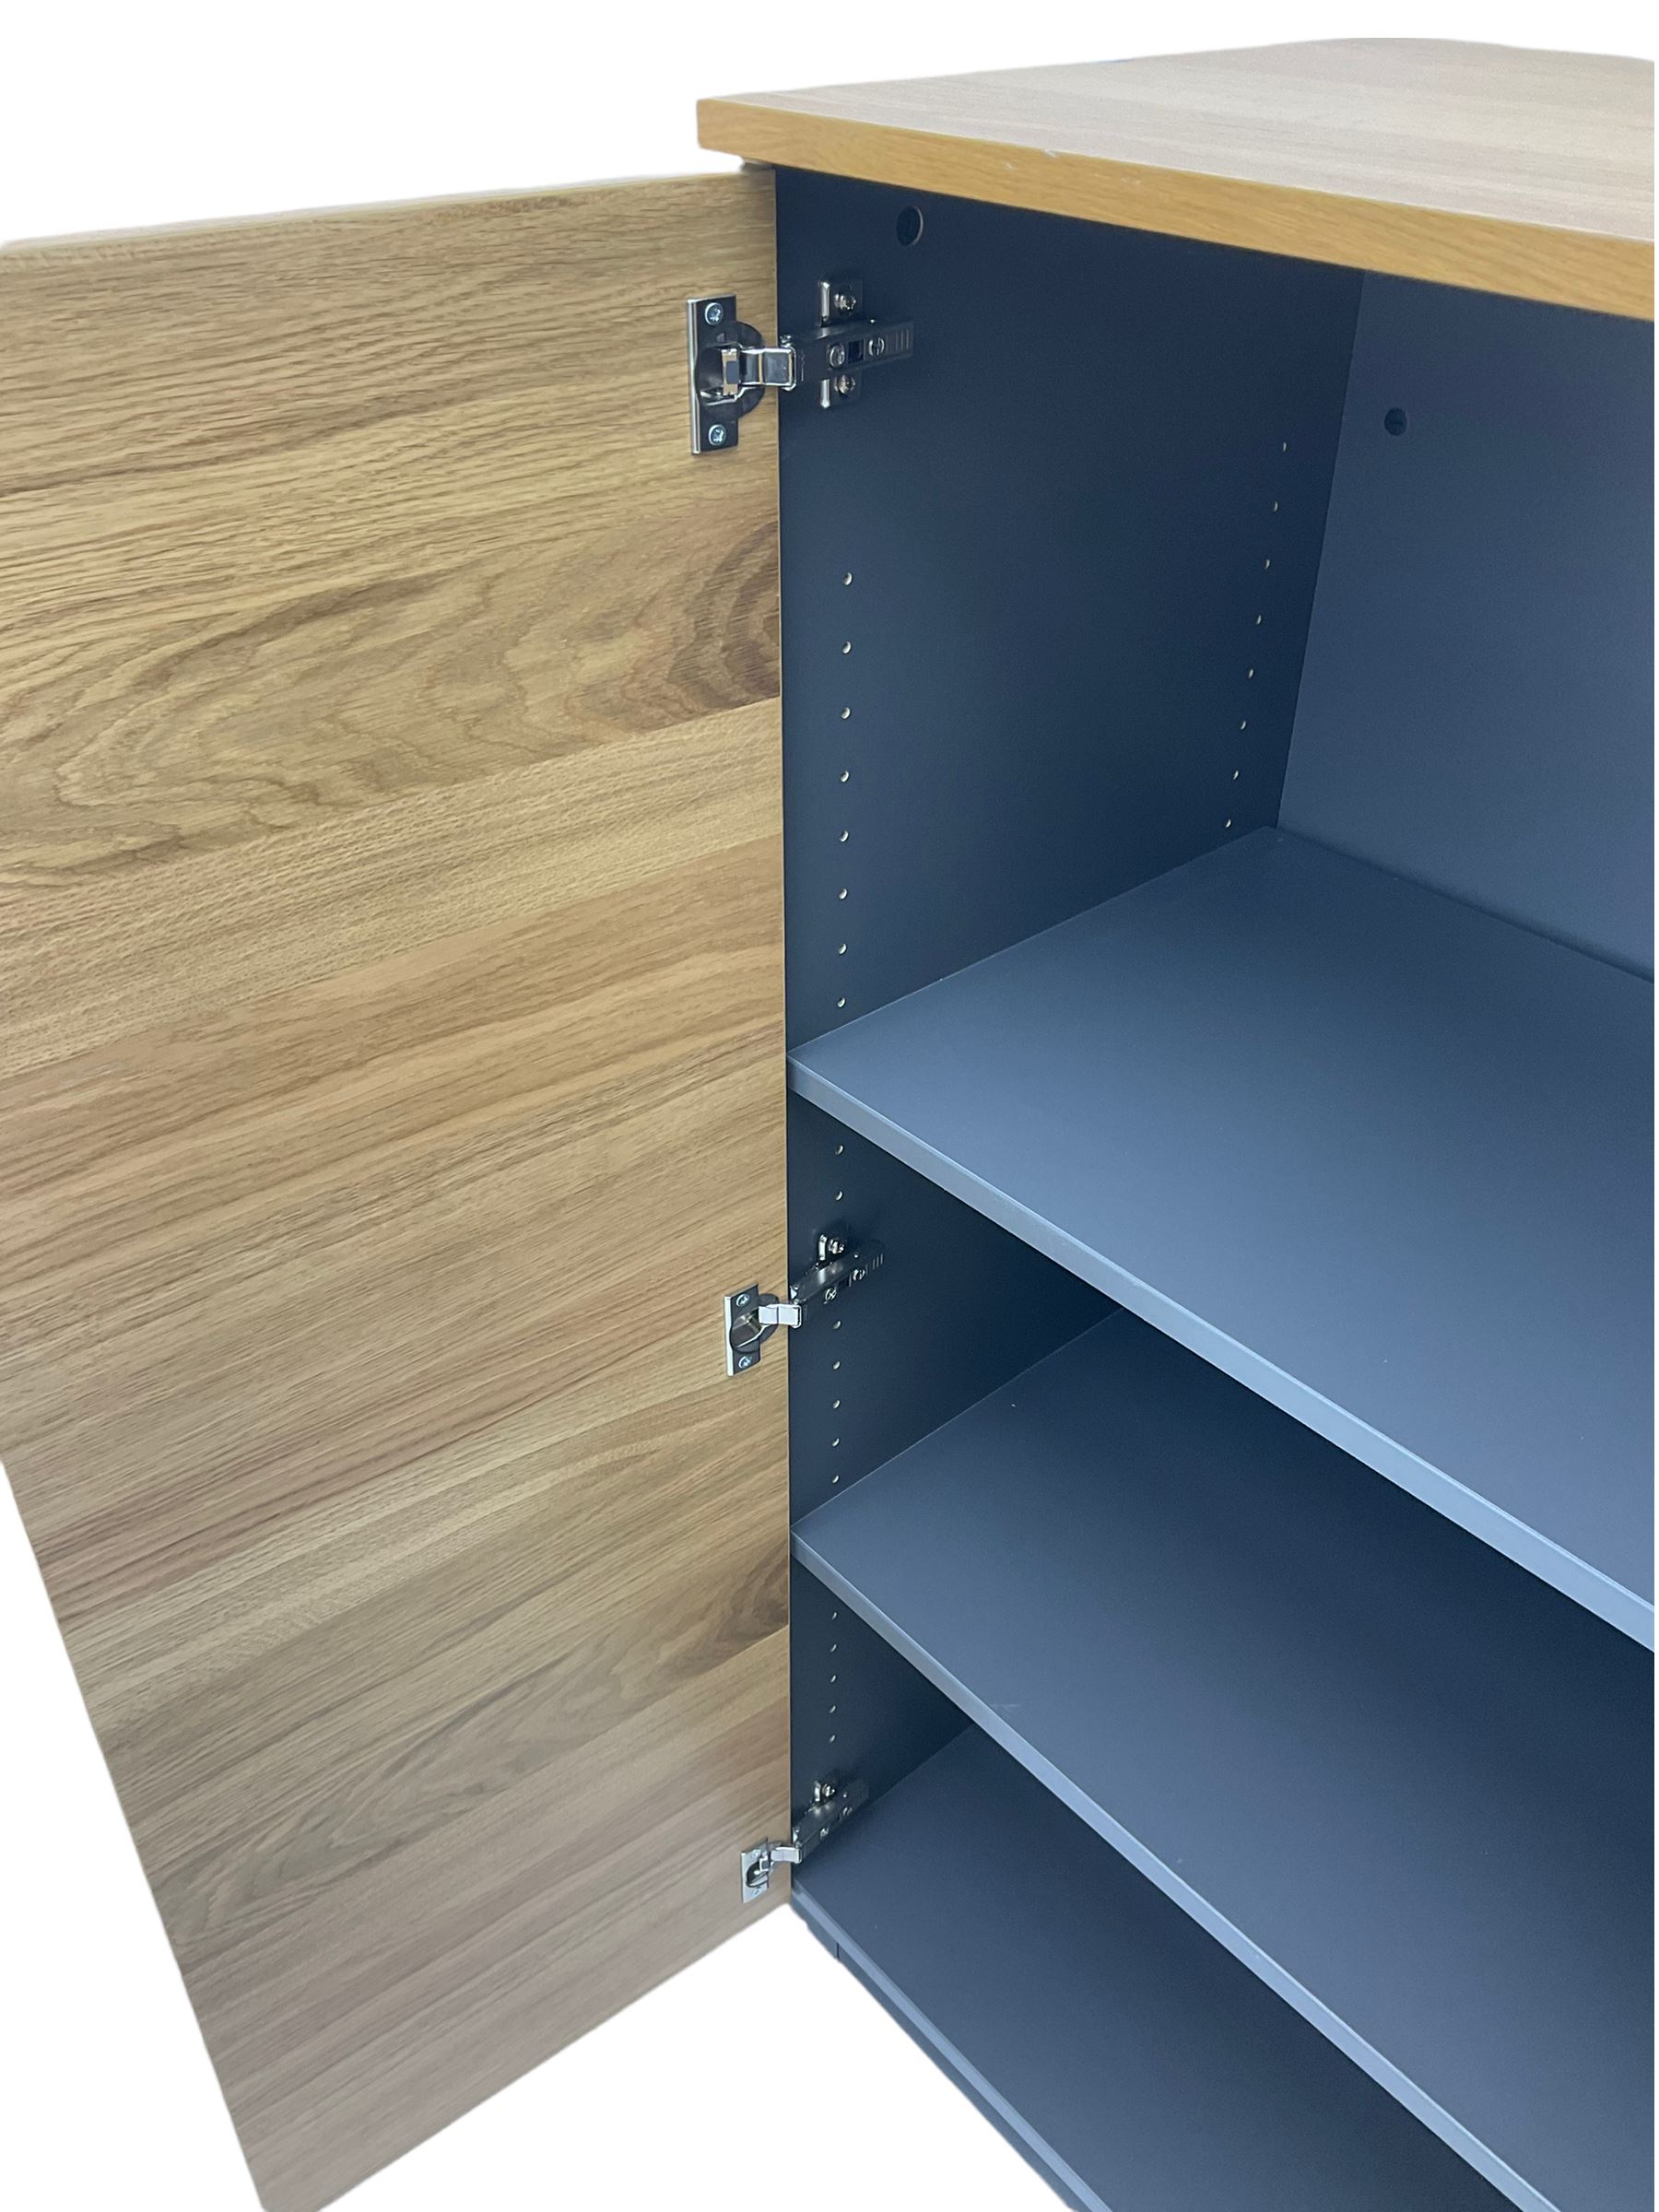 IKEA Galant light oak two door office cabinet - Image 3 of 4